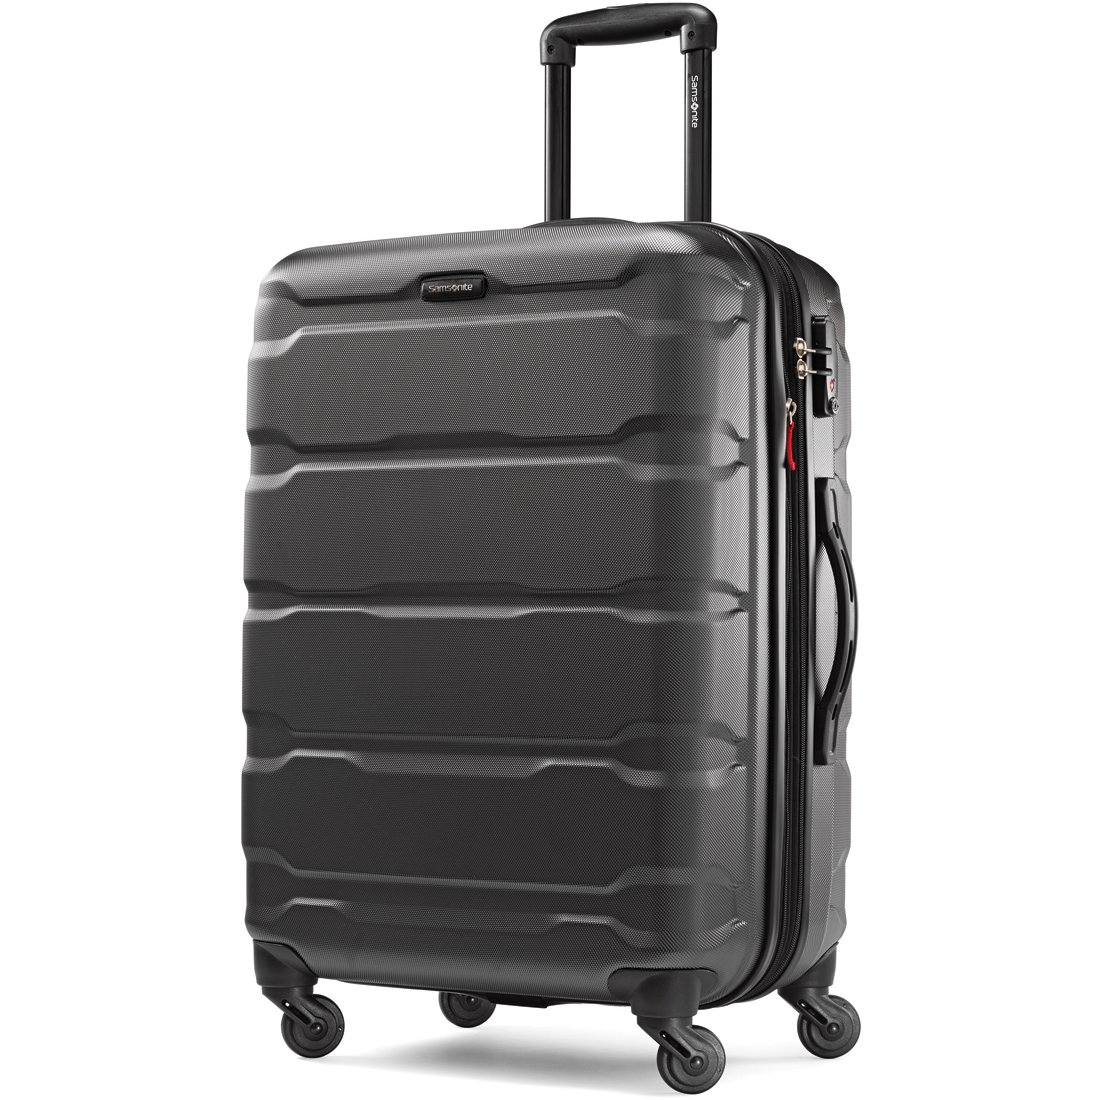 Samsonite Unisex-Adult Omni 2 Hardside Expandable Luggage with Spinner Wheels Luggage Suitcase 